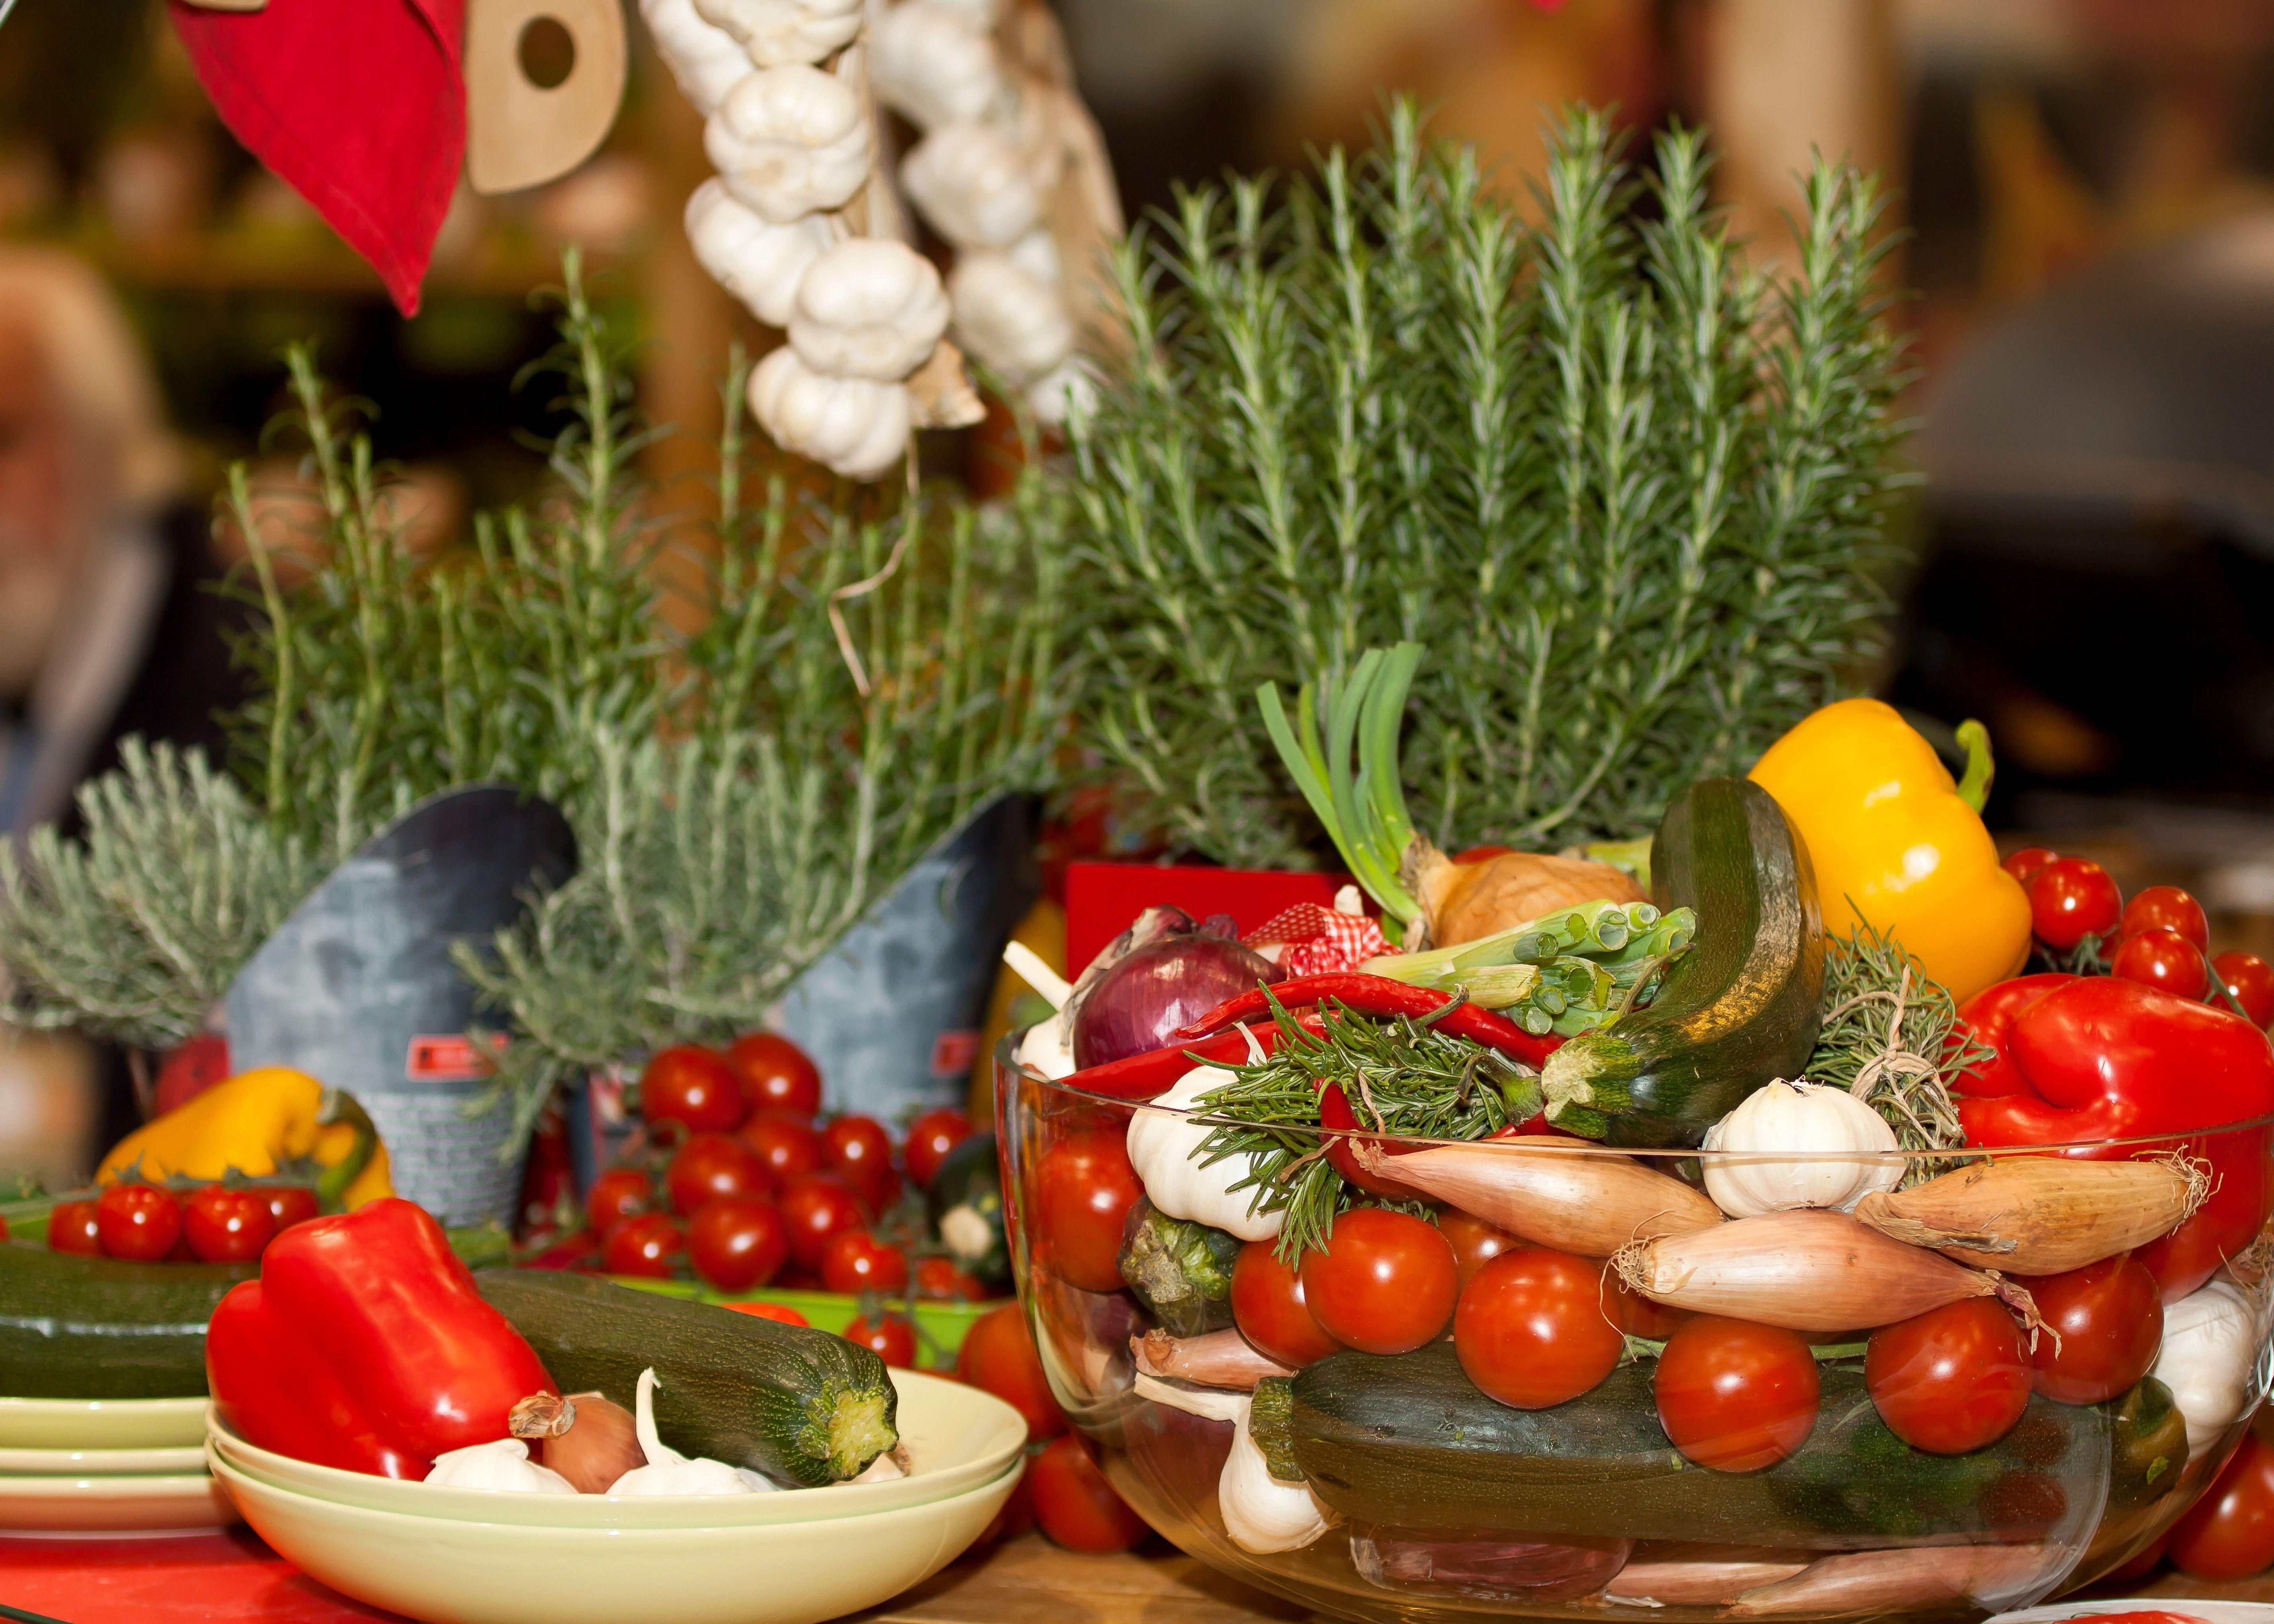 Mediterranean, Vegetables, Herbs, food and drink, food free image